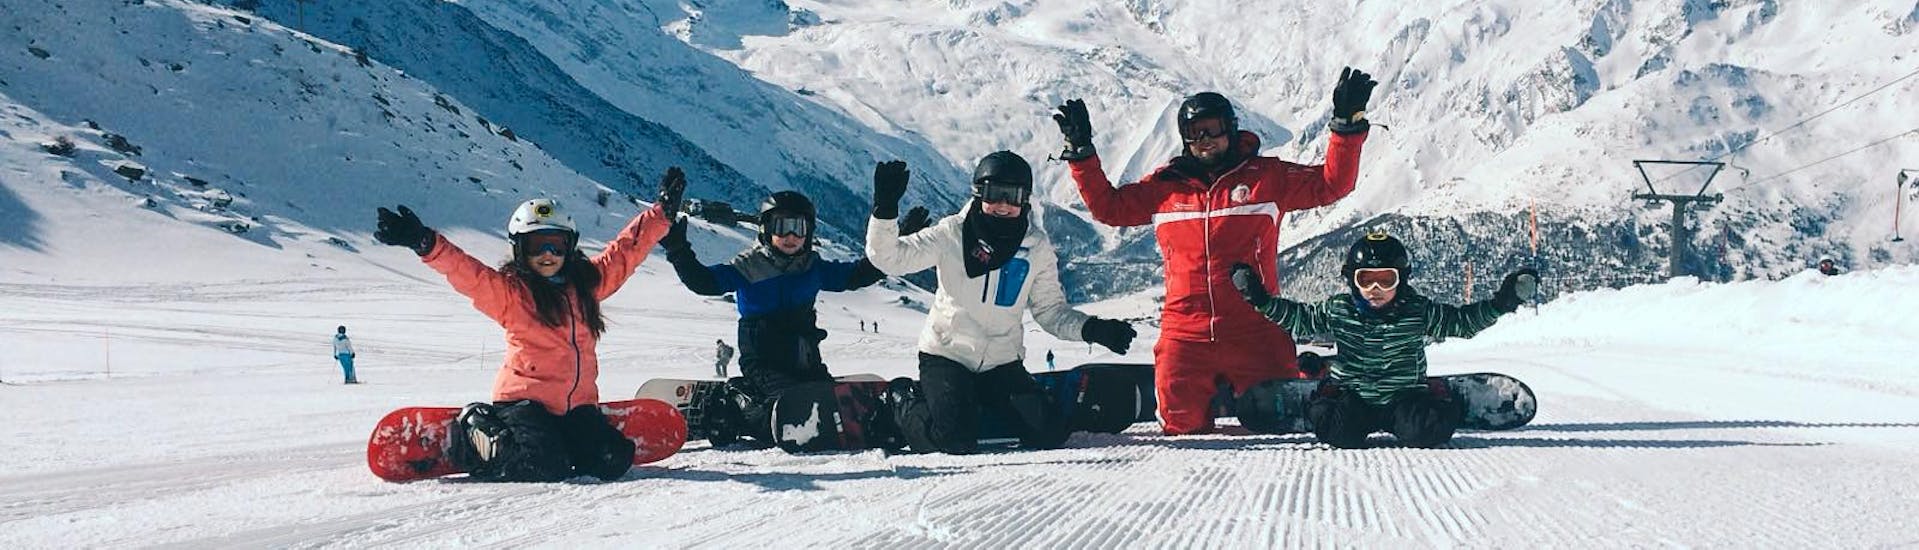 Clases de snowboard a partir de 6 años para principiantes con Swiss Ski School Saas-Grund.